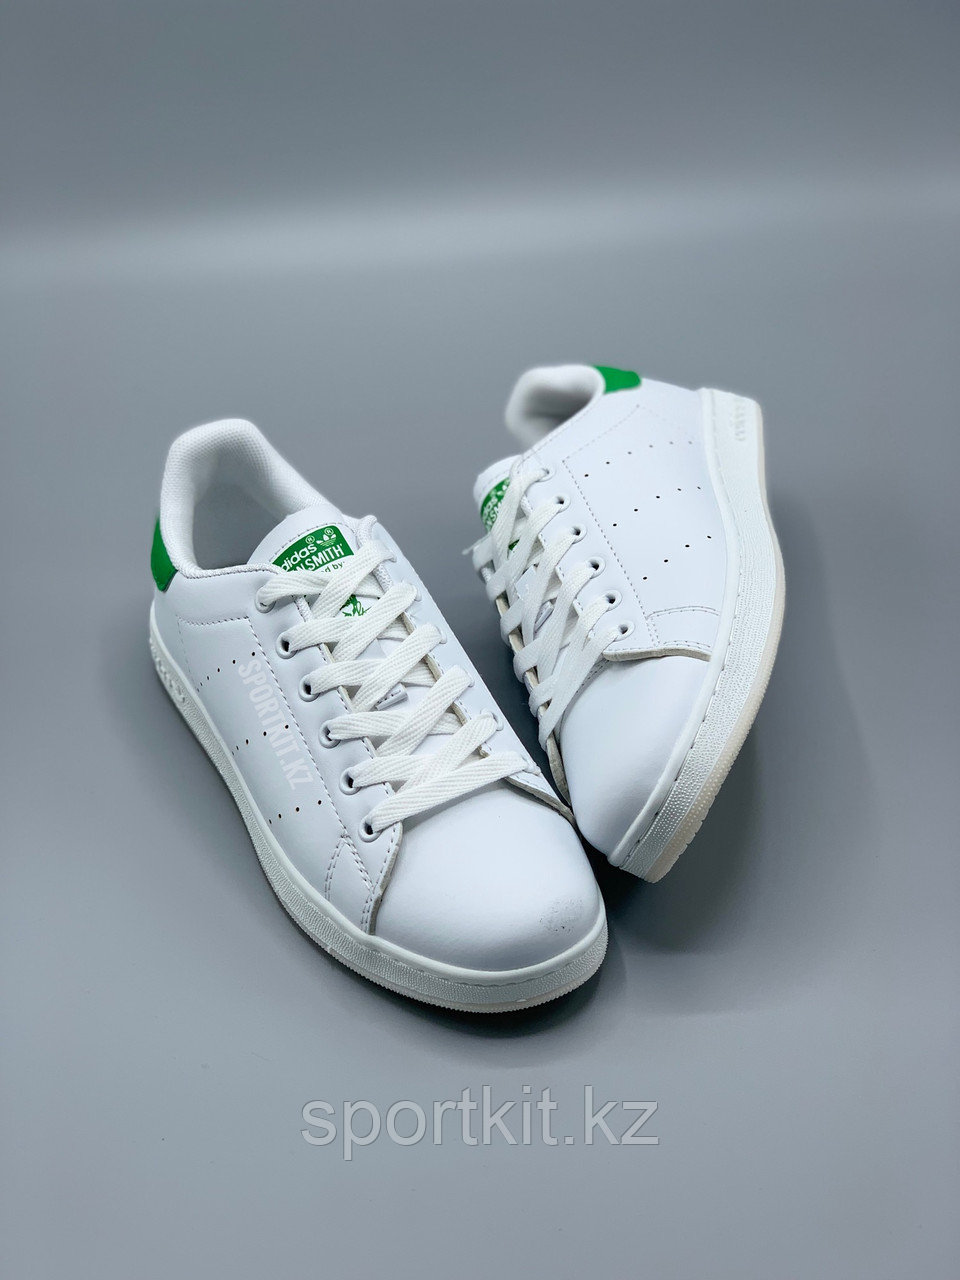 Кроссовки (кеды) Adidas Stan Smith с бесплатной доставкой